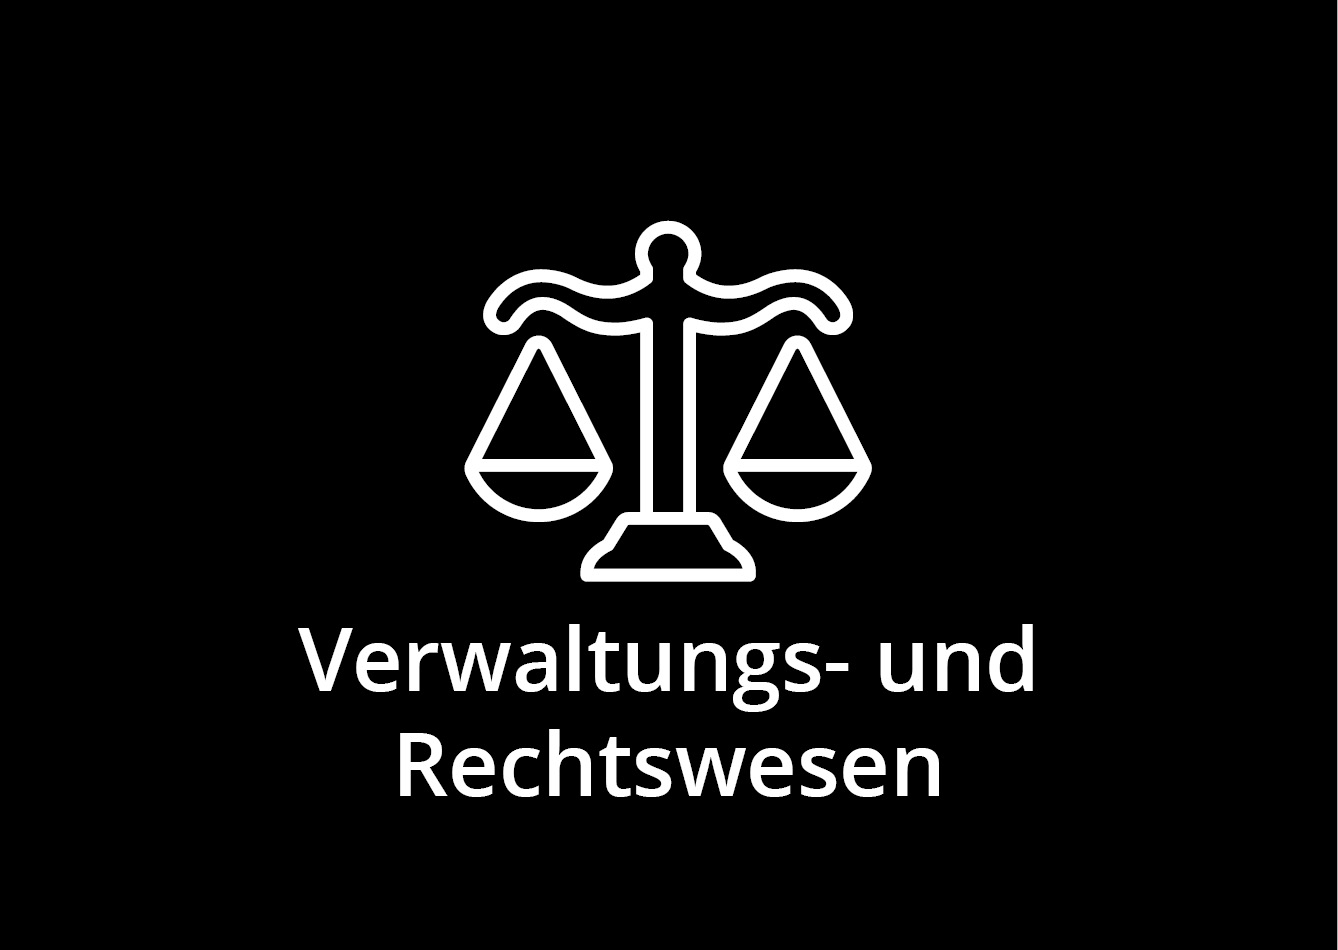 Verwaltung & Rechtswesen